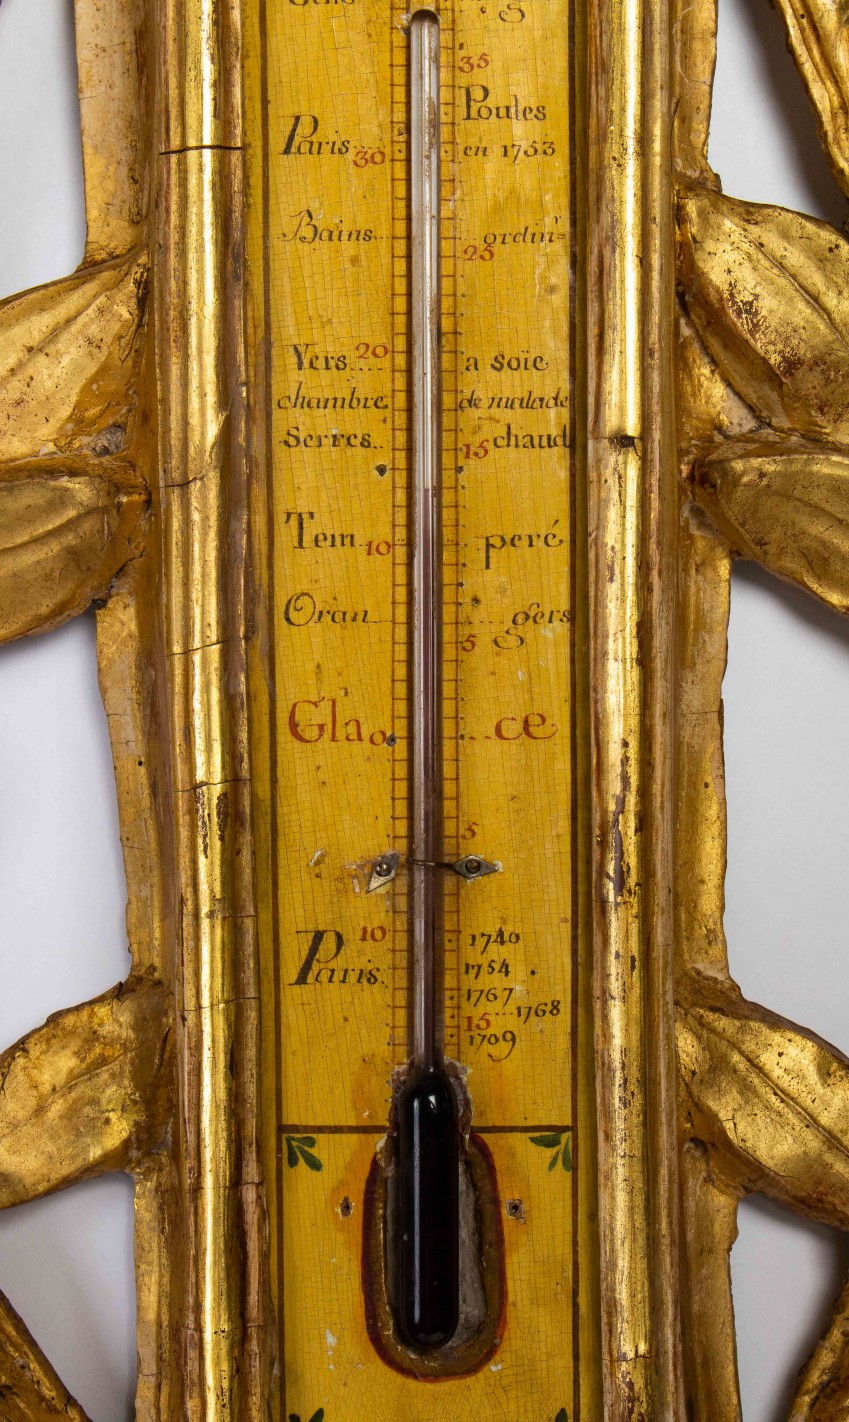 Le Marché Biron - Baromètre-thermomètre d'époque Louis XVI (1774 - 1793).